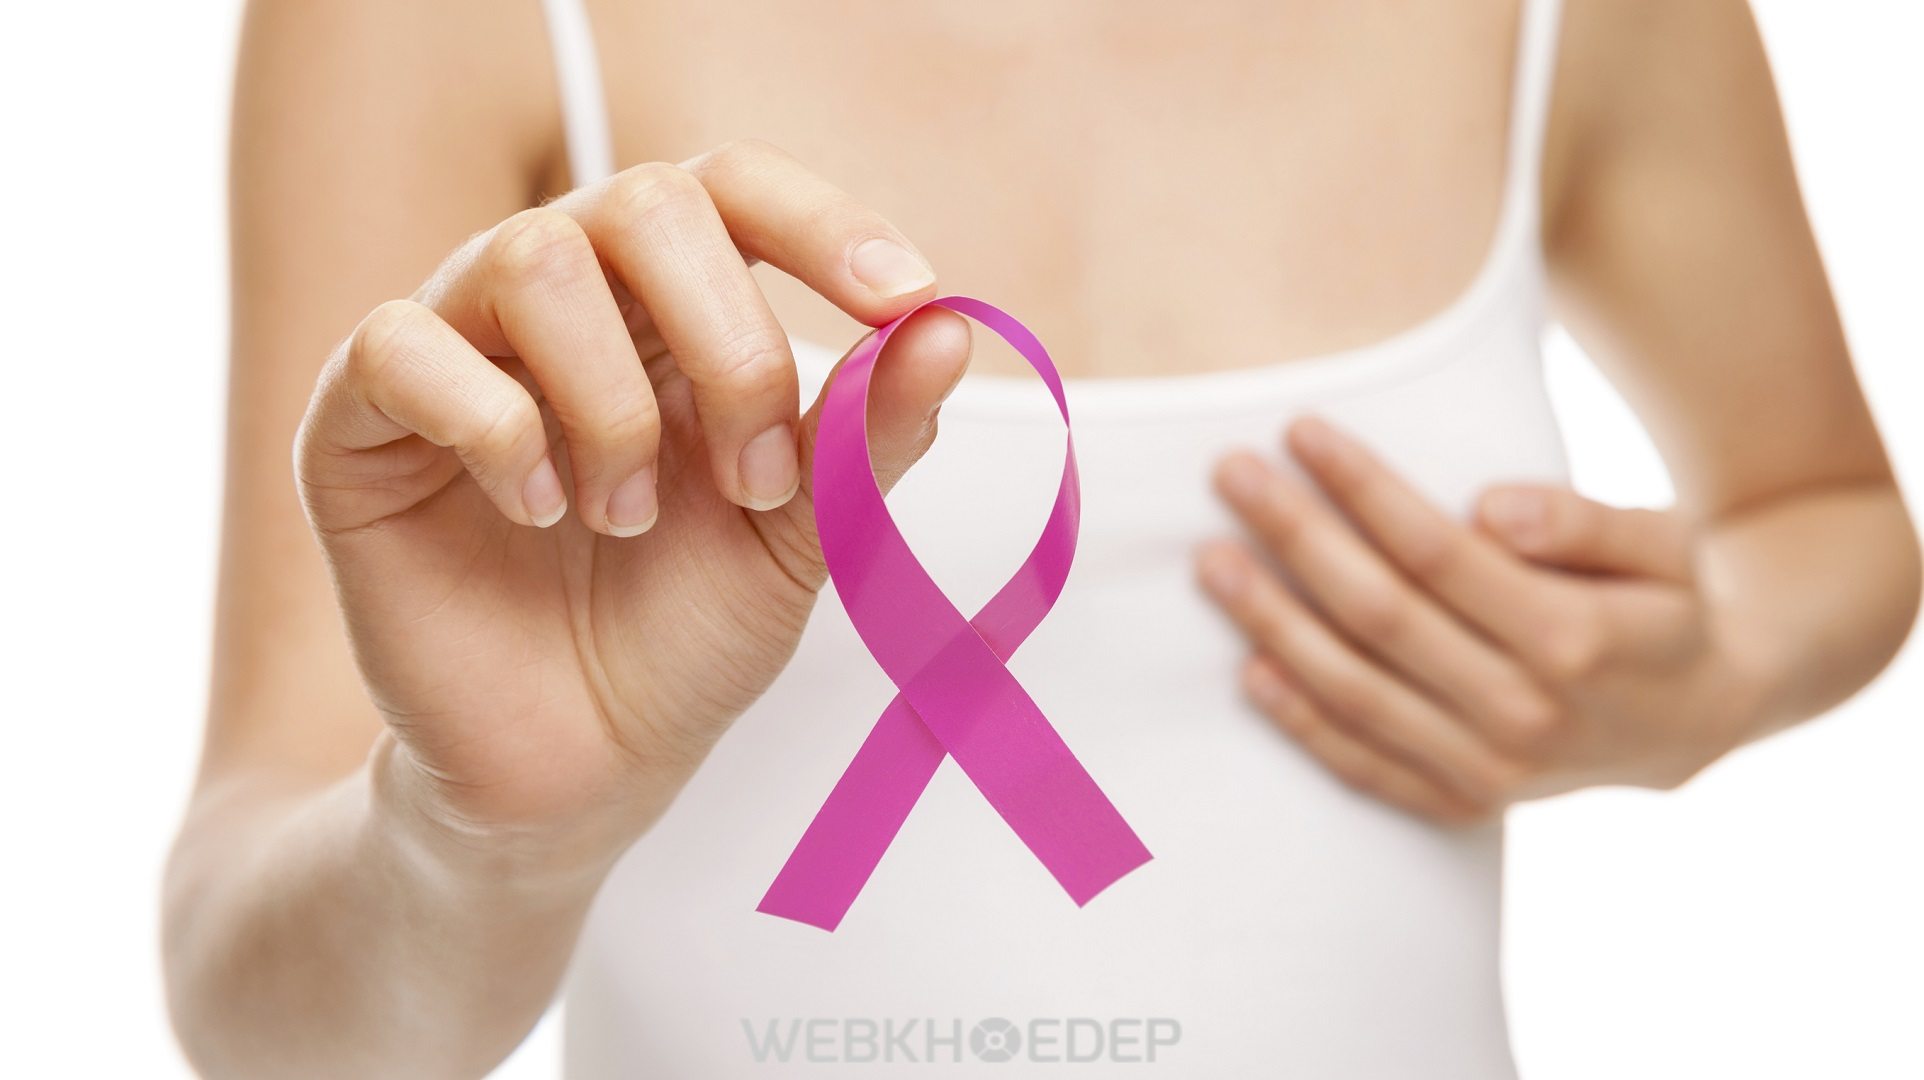 Phụ nữ thường dễ mắc phải ung thư vú ở độ tuổi ngoài 40